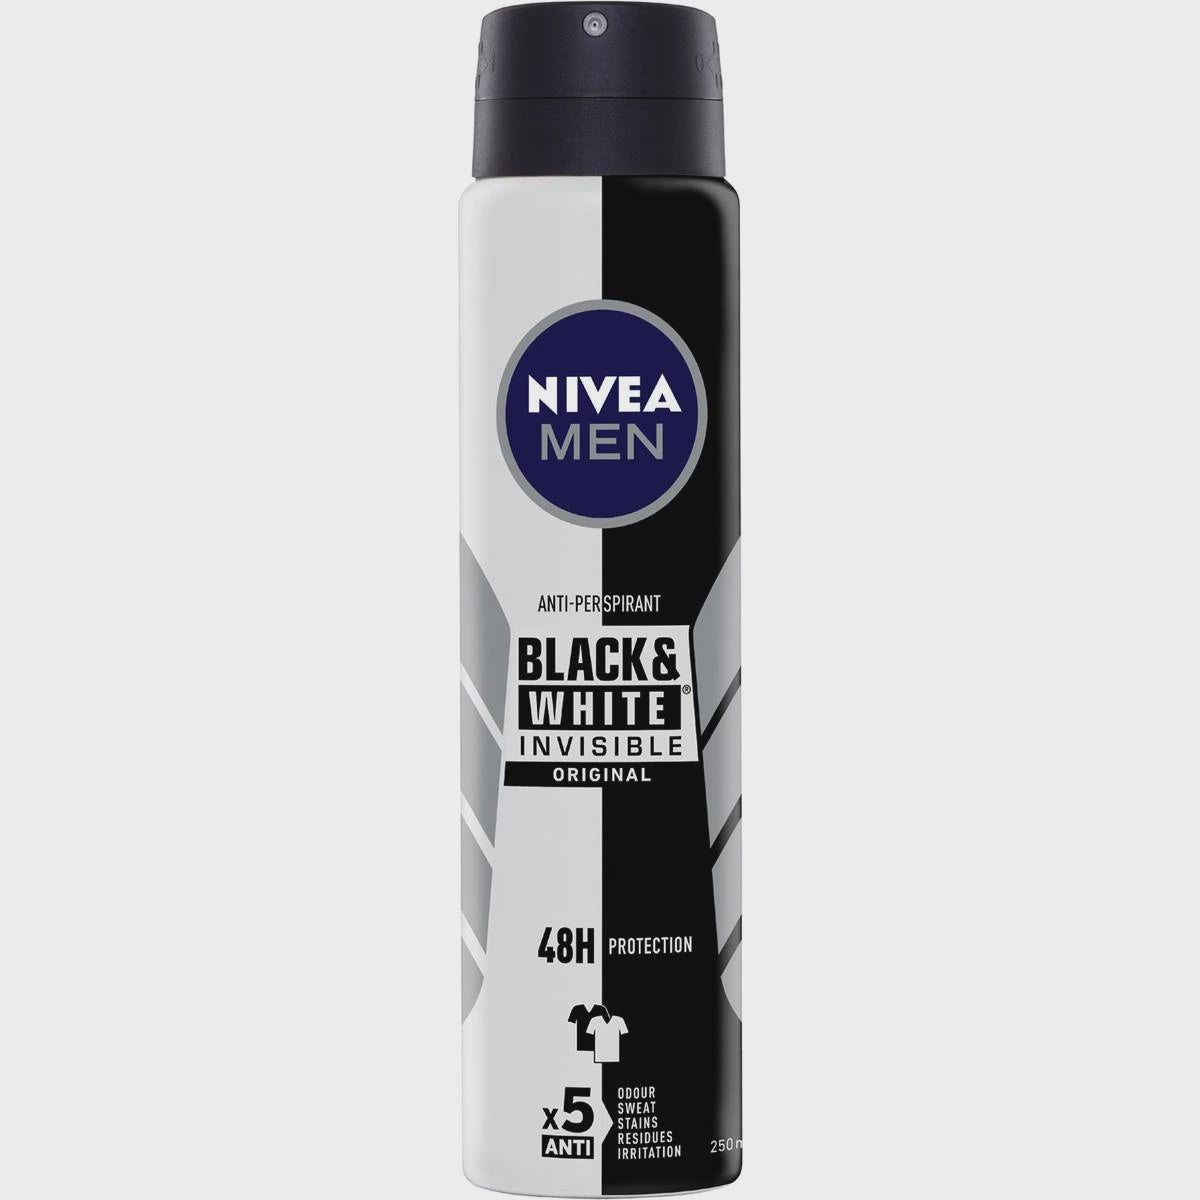 Nivea Black and White Invisable Original Anti-perspirant 250ml